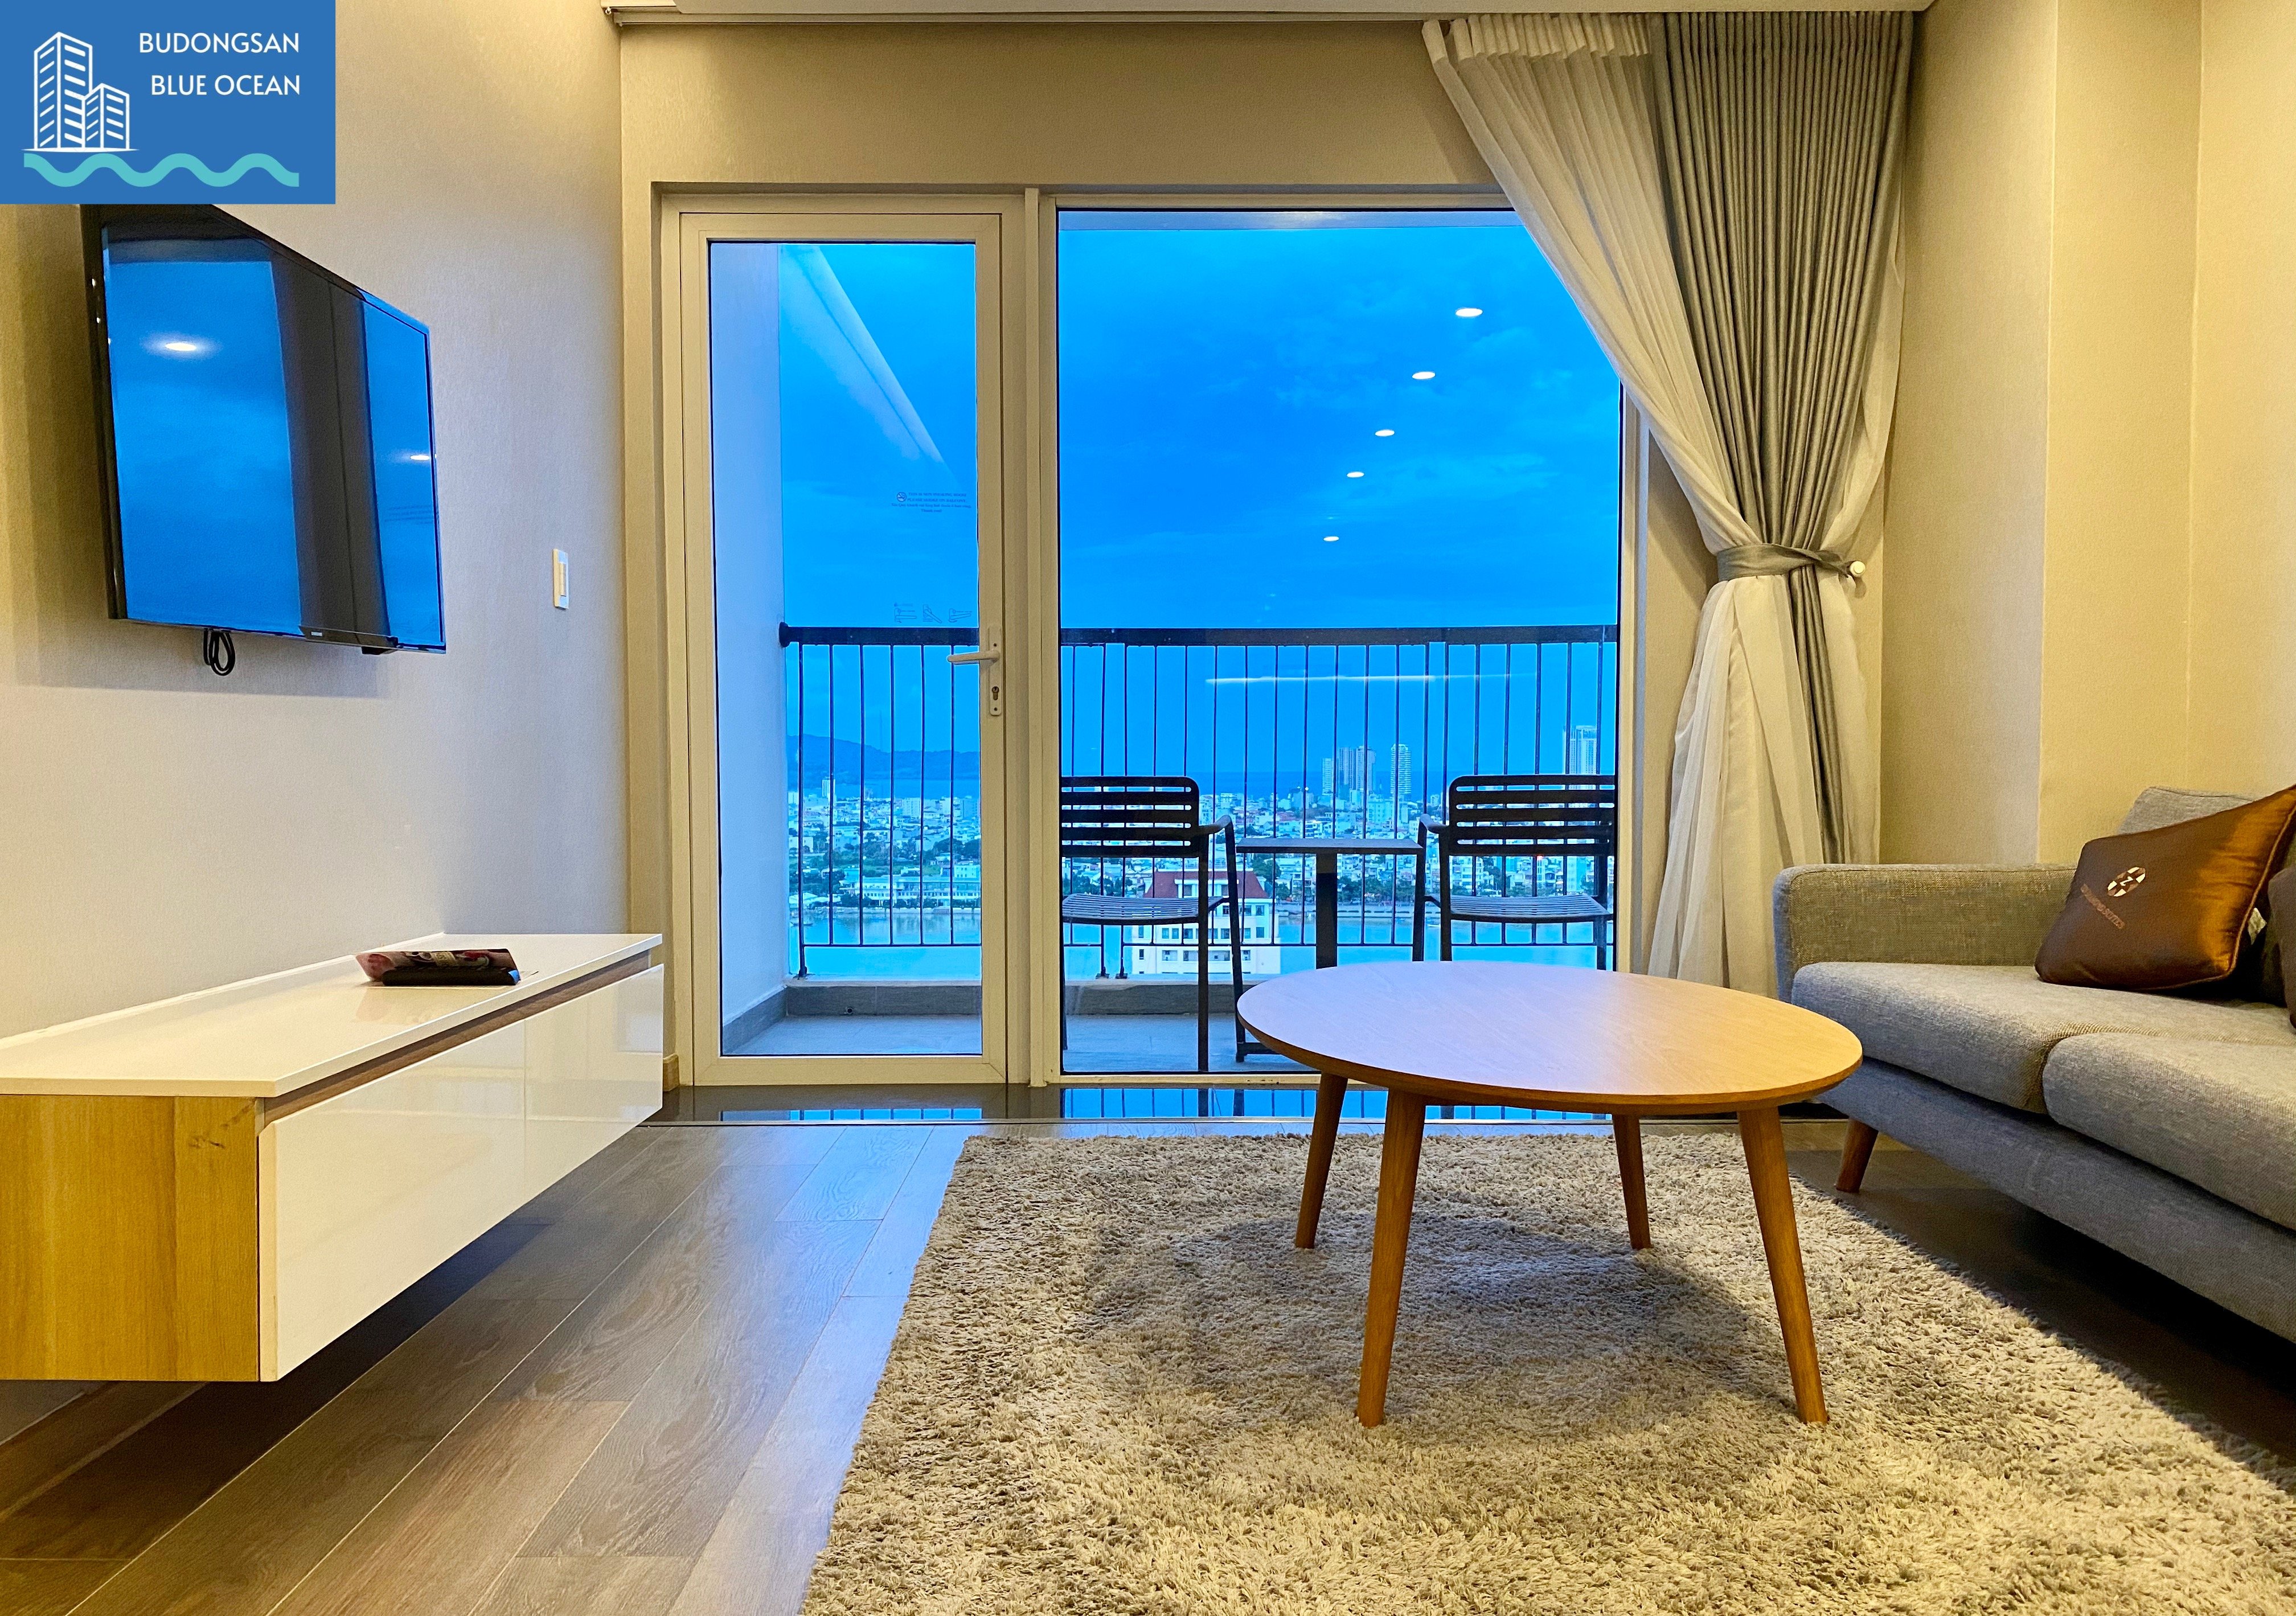 Fhome Zen bán giá chỉ 2,35 tỷ căn hộ 1PN view cực đẹp Budongsan Biển Xanh 6